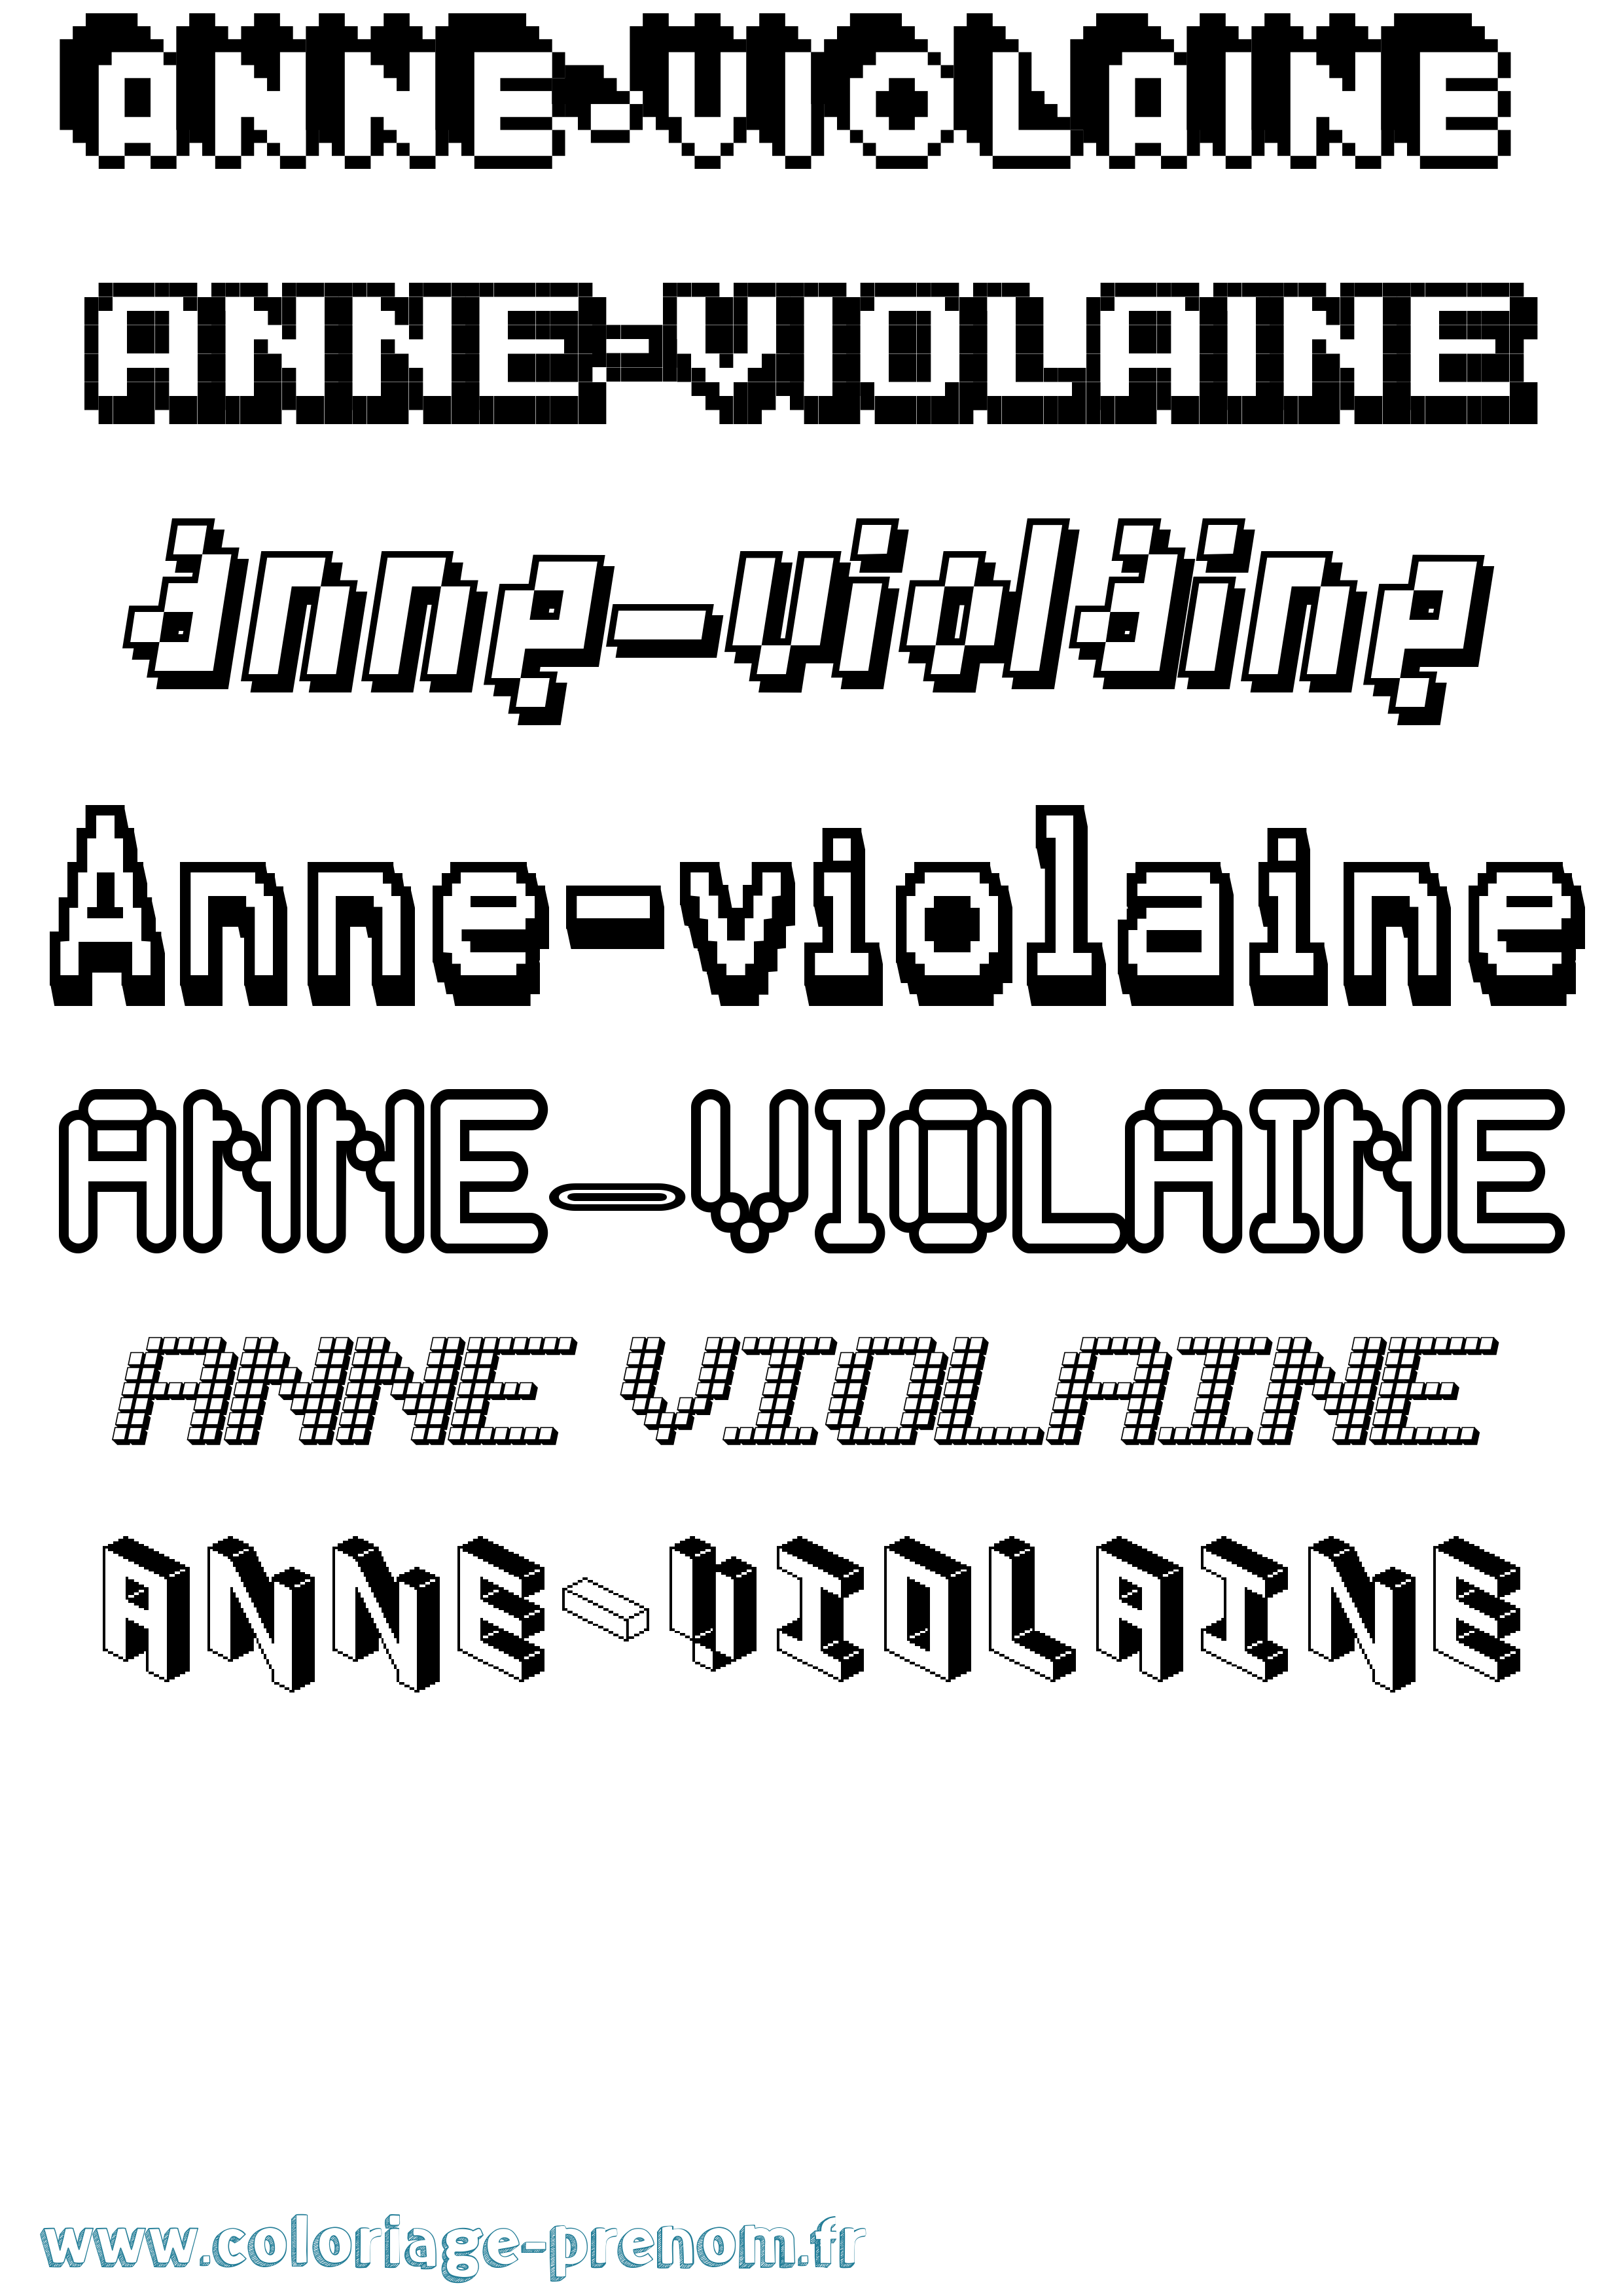 Coloriage prénom Anne-Violaine Pixel